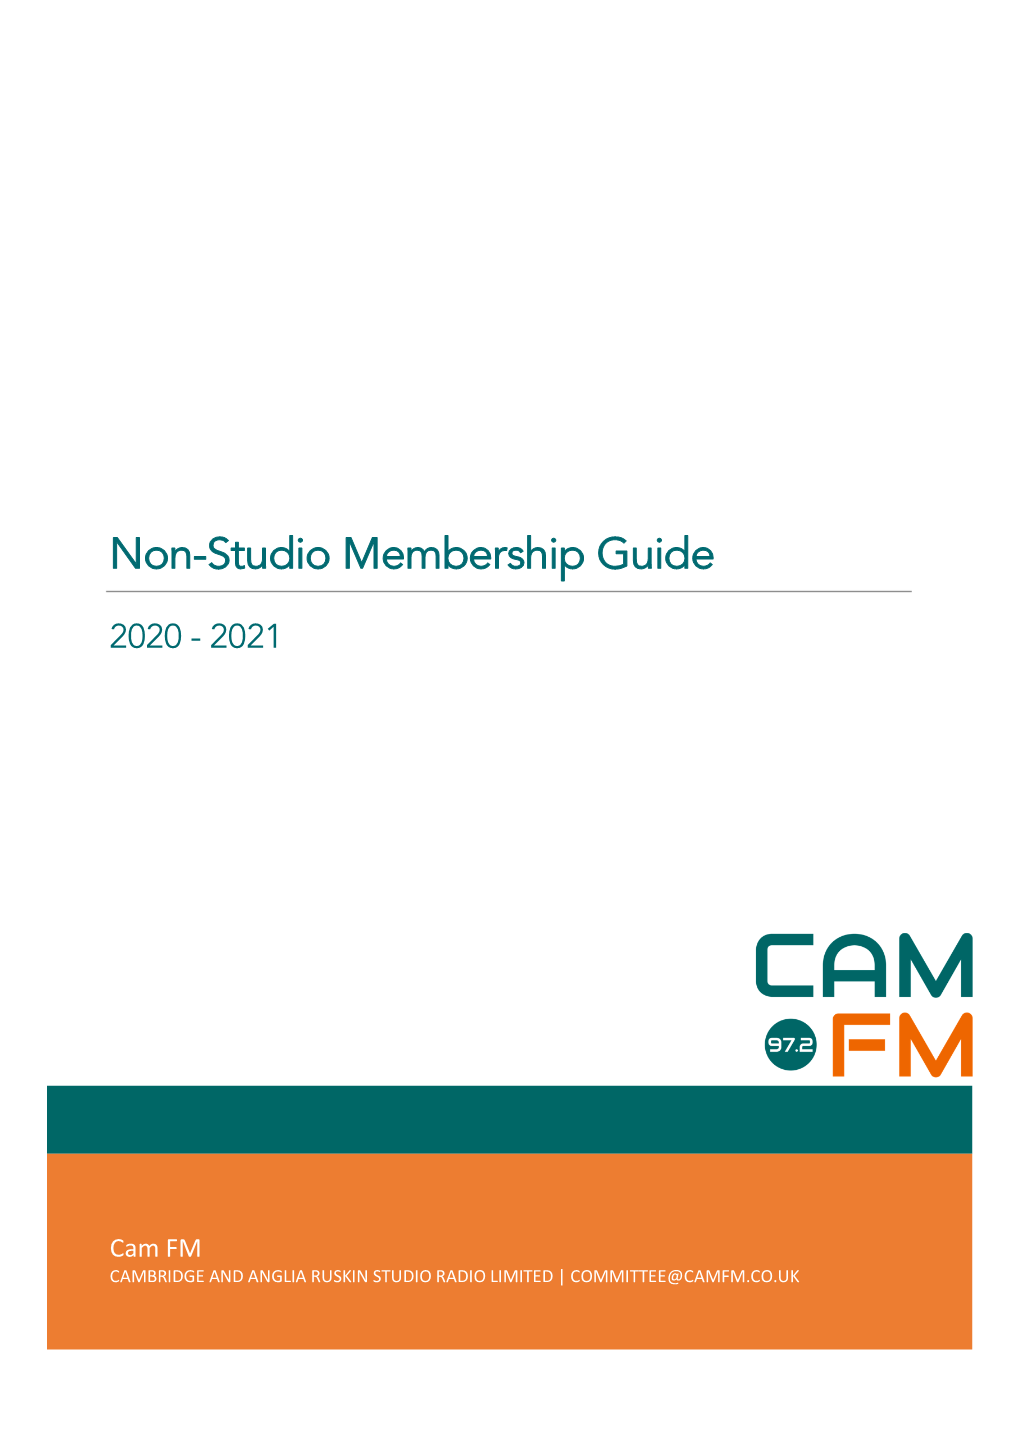 Cam FM Non-Studio Membership Guide 2020-21